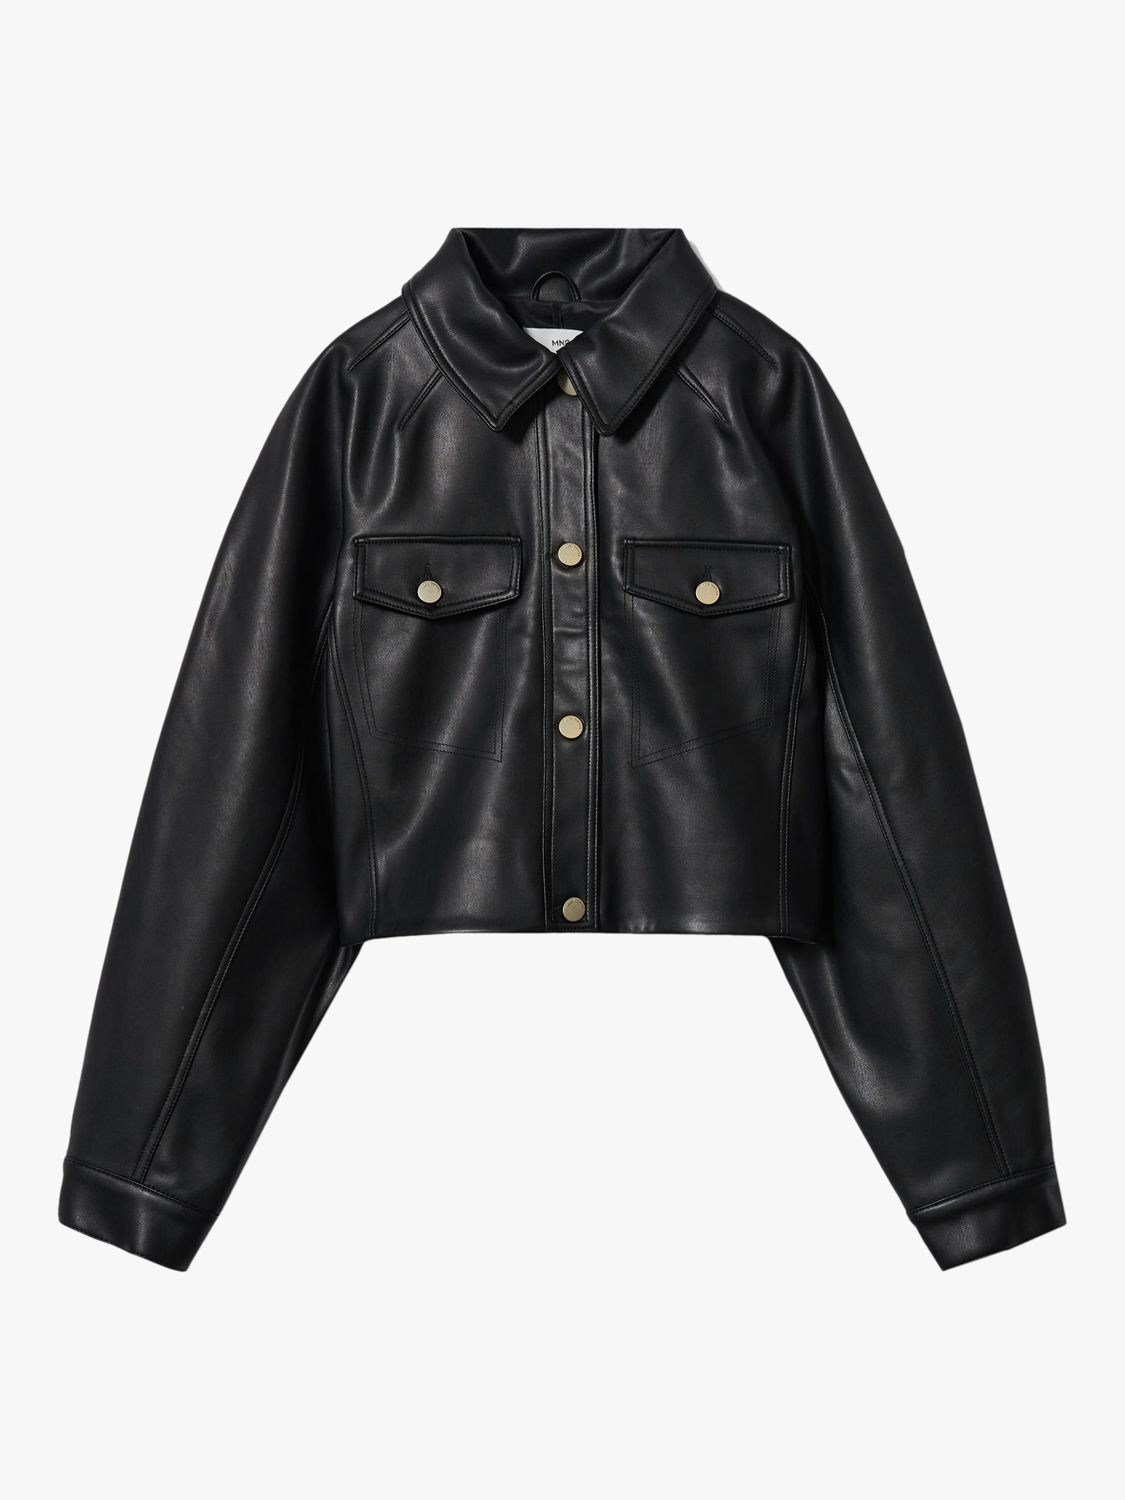 Mango Masha Faux Leather Jacket, Black, S